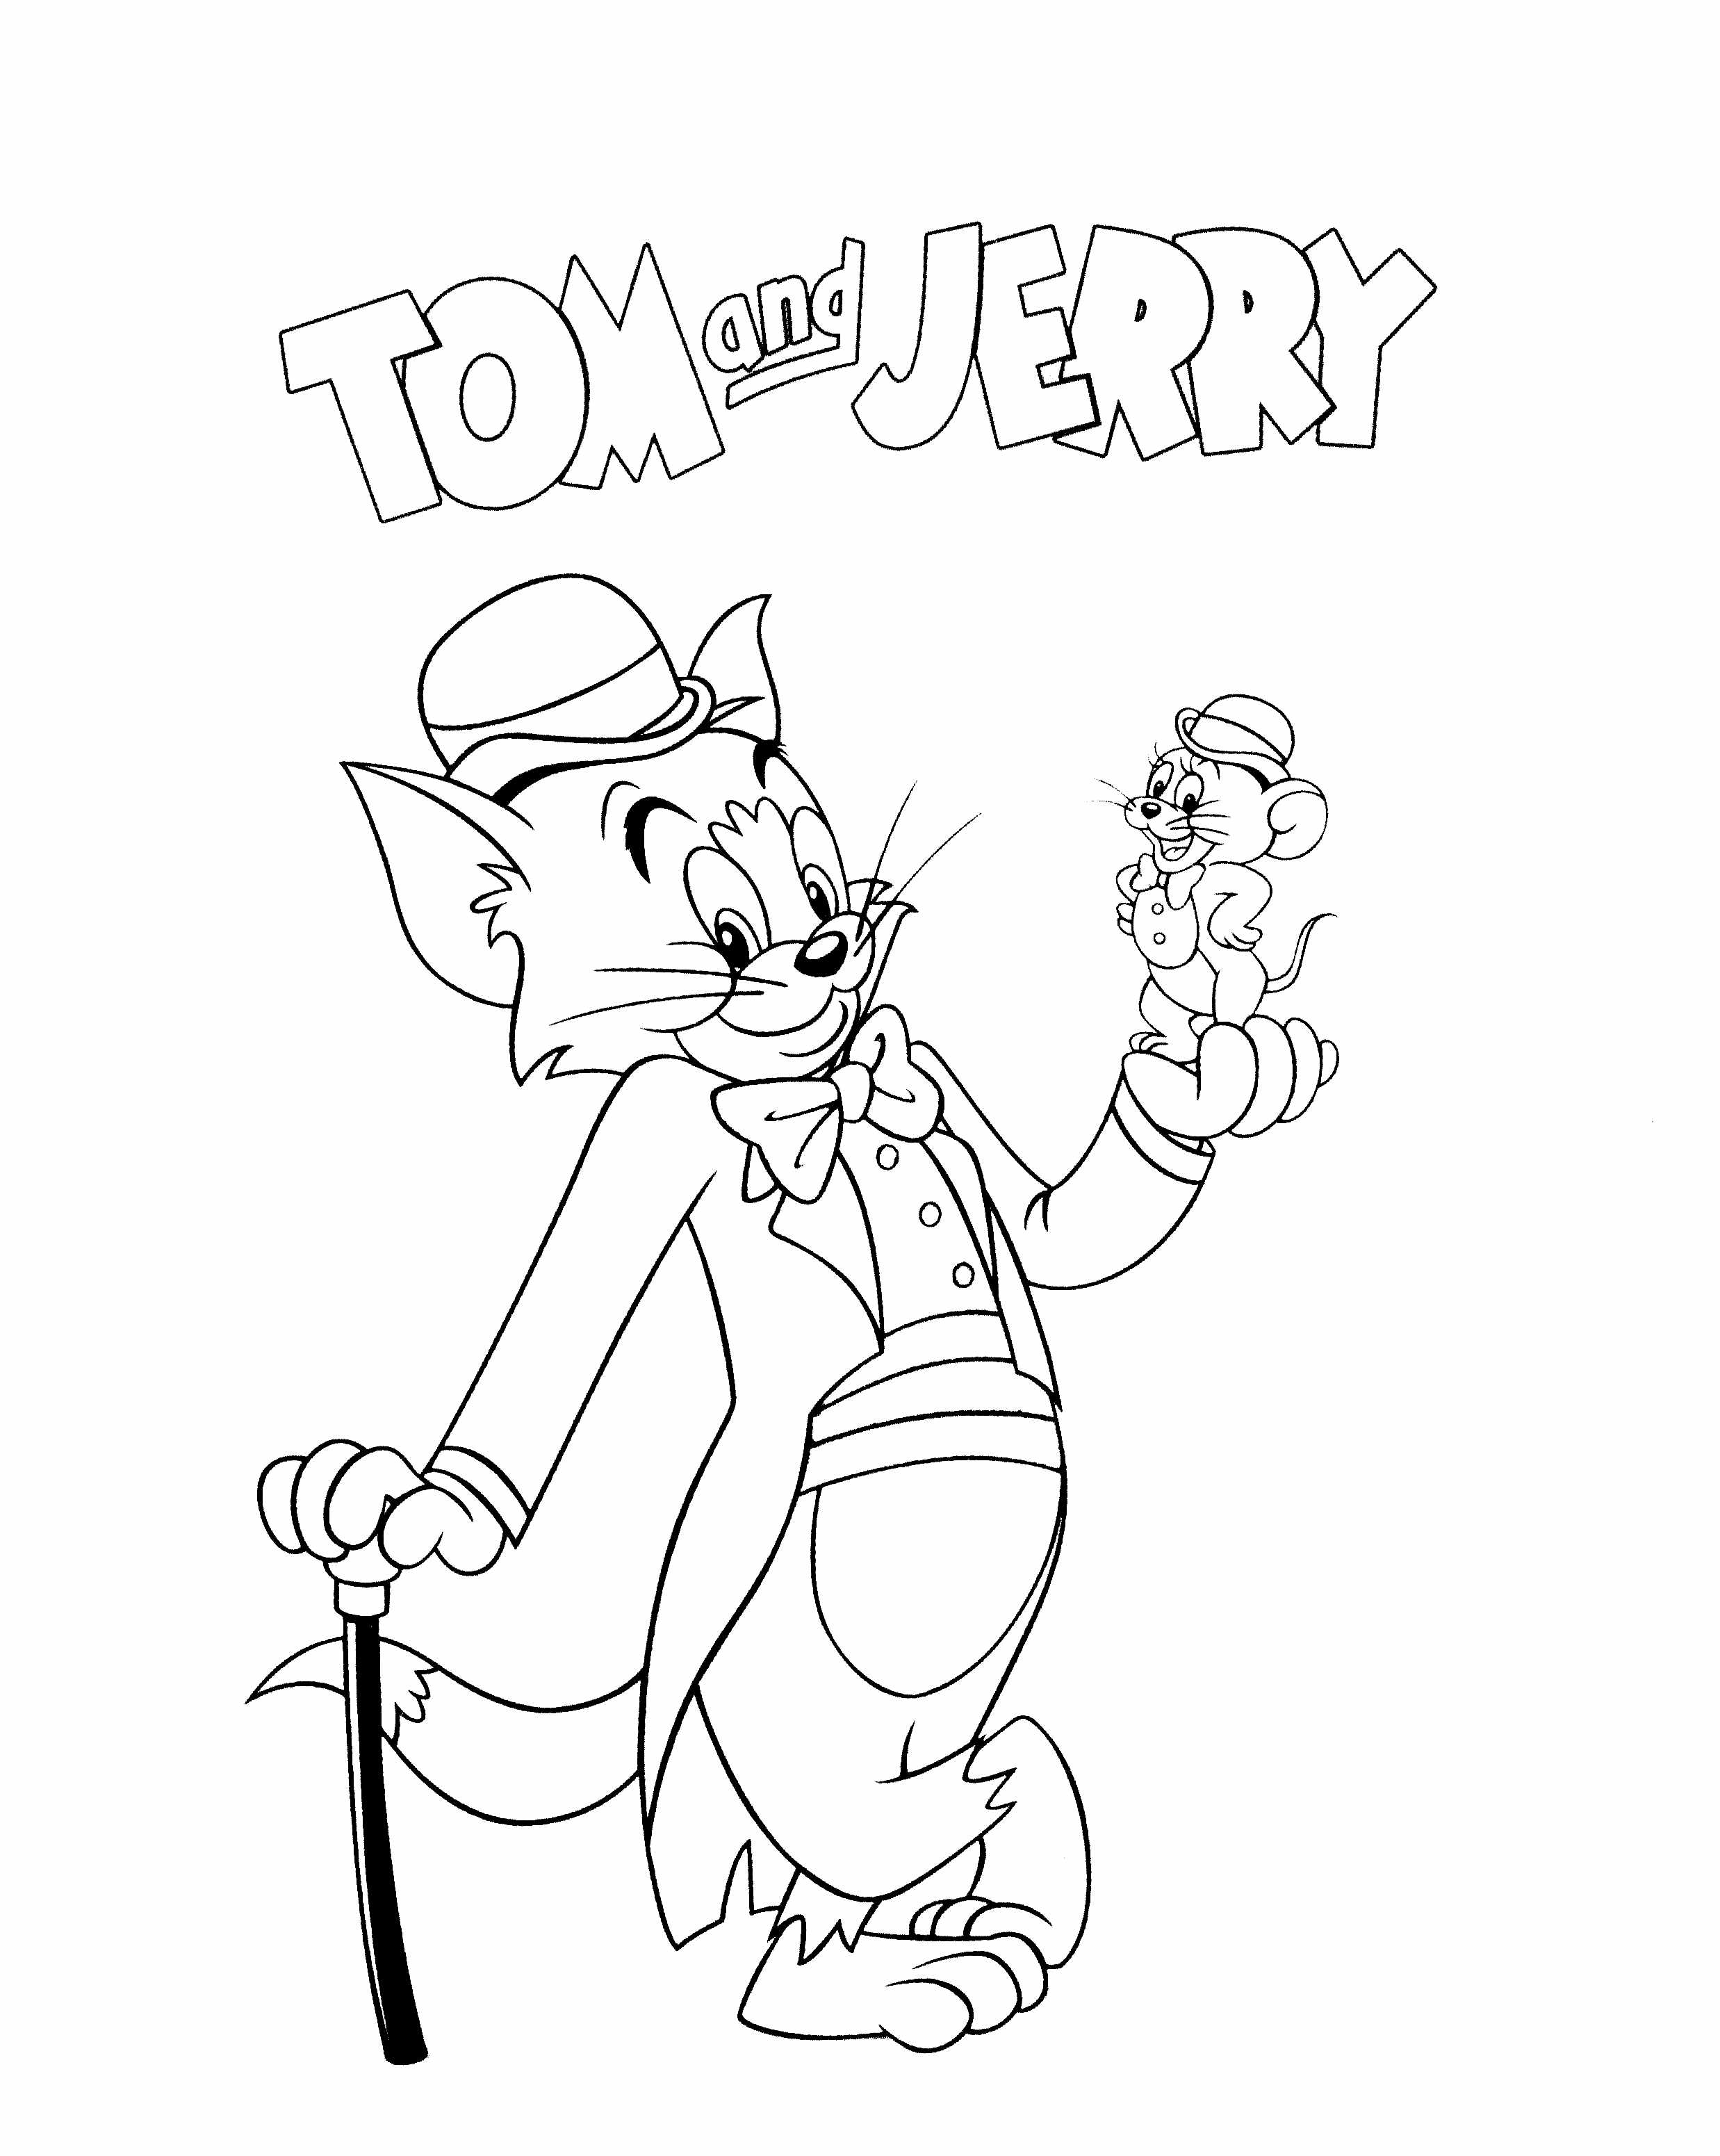 Tom & Jerry très élégants et amis sur ce coloriage